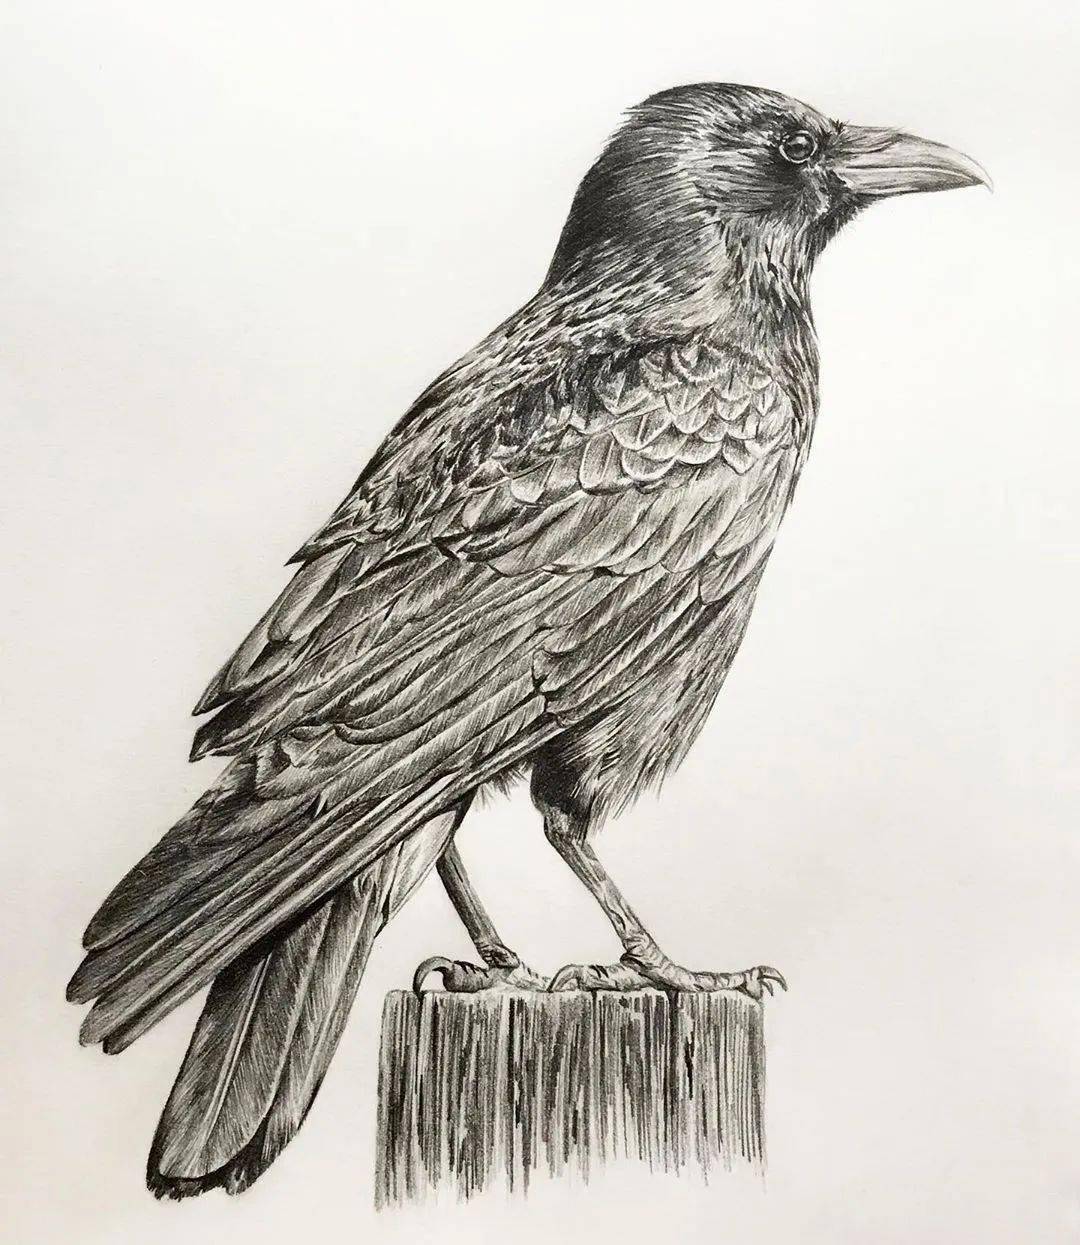 8小时画了一只猎鹰活灵活现的各种鸟类素描果断收藏